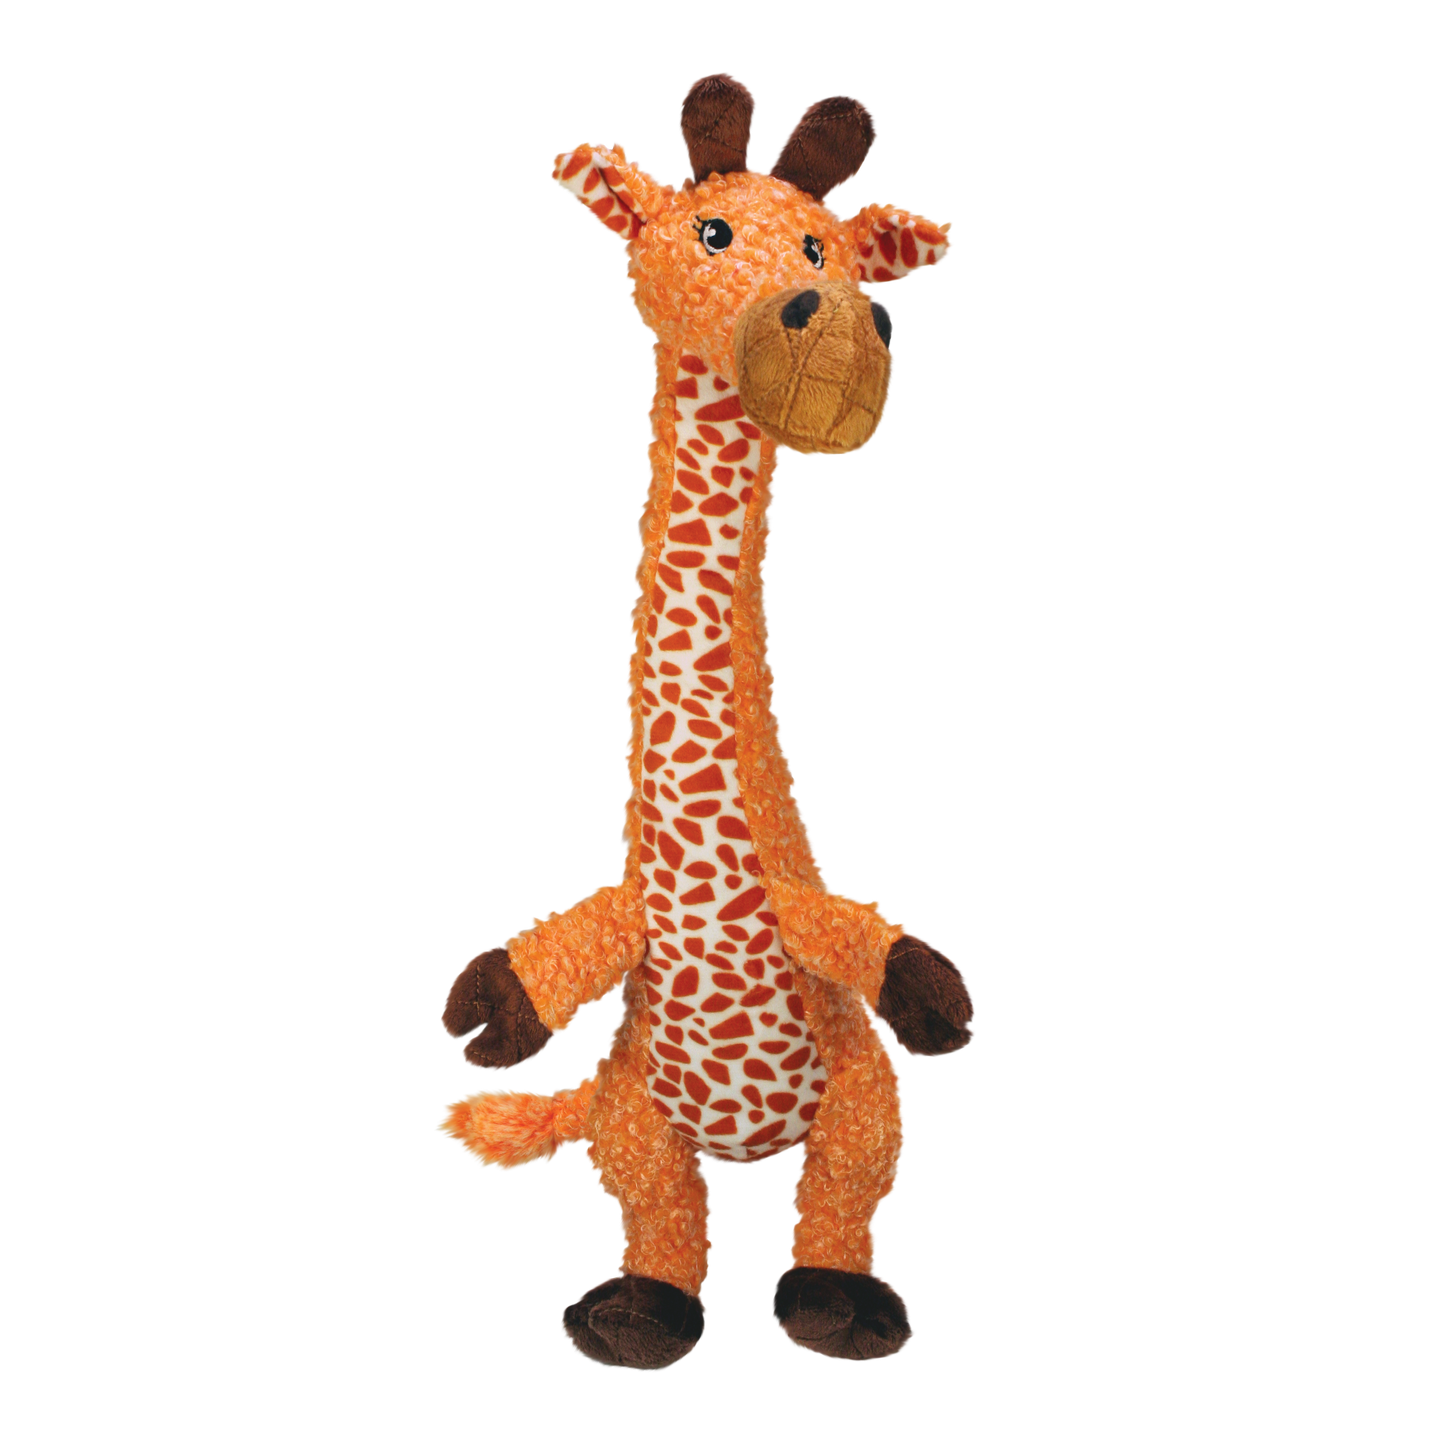 Jouet Girafe 'Kong Shaker'